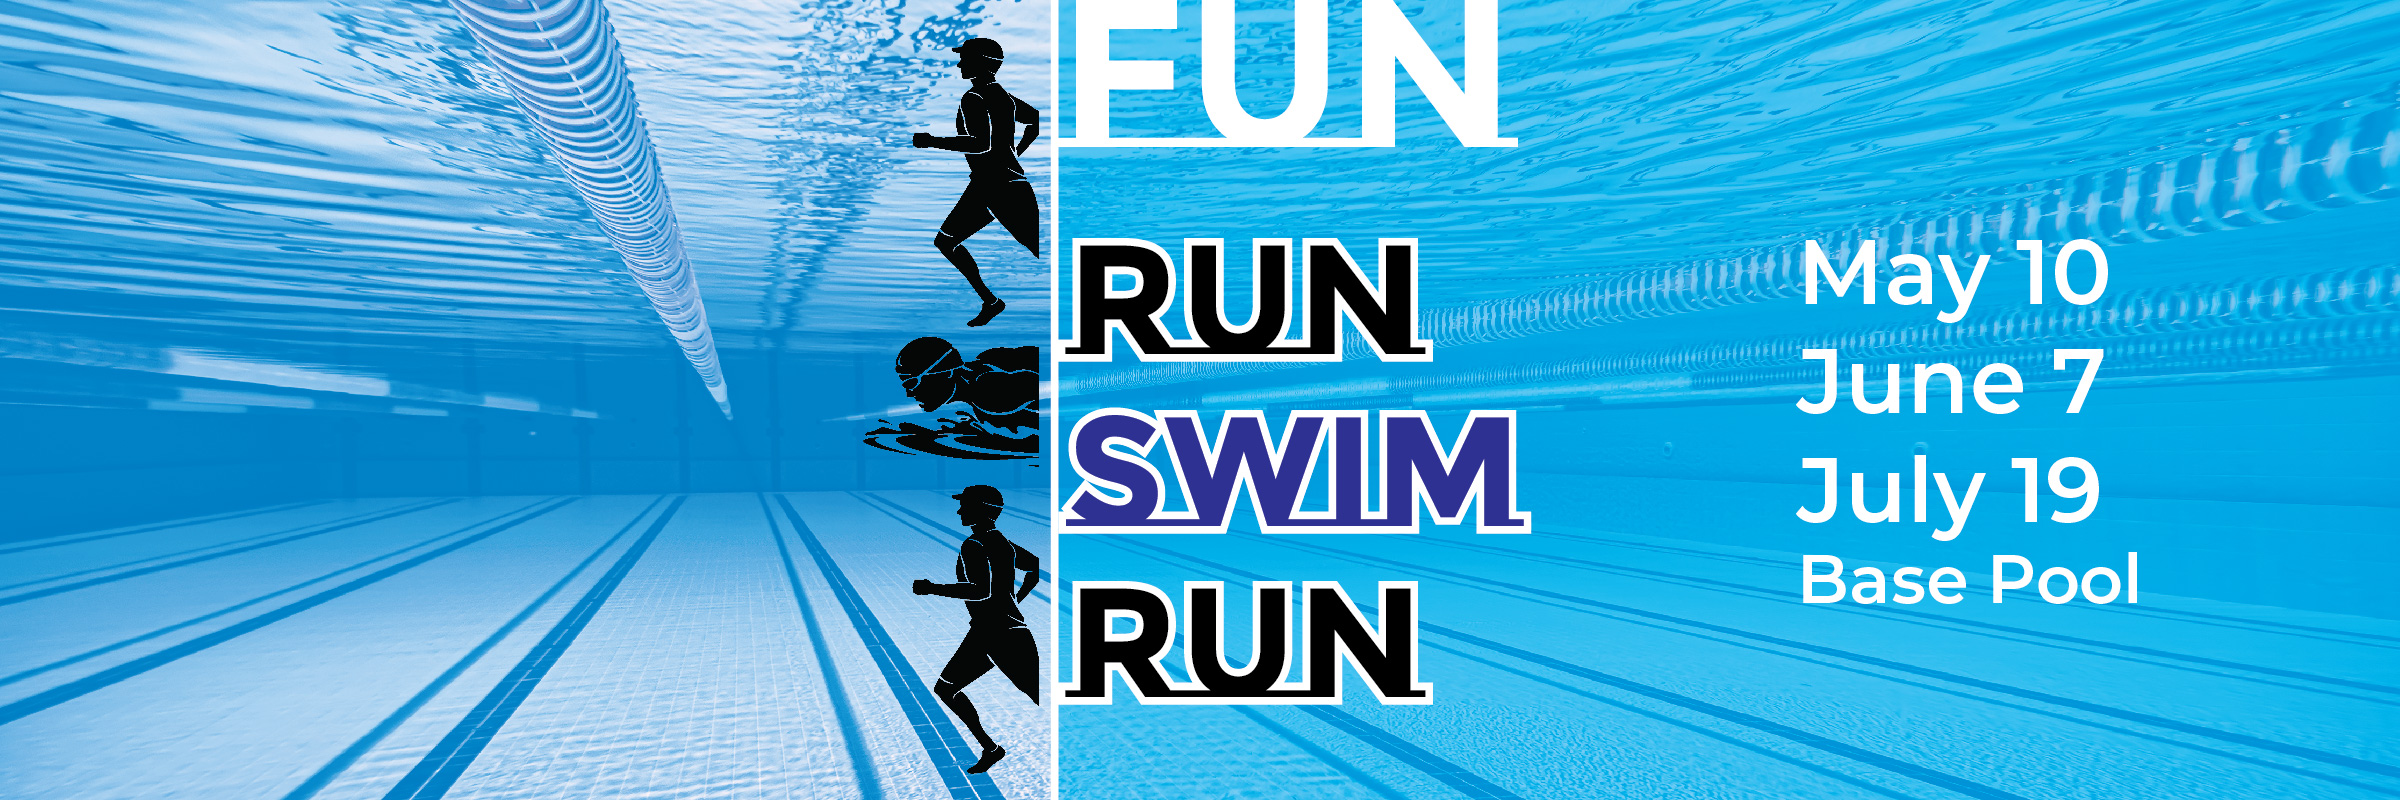 071924-aq-fun-run-swim-run_rotator.jpg